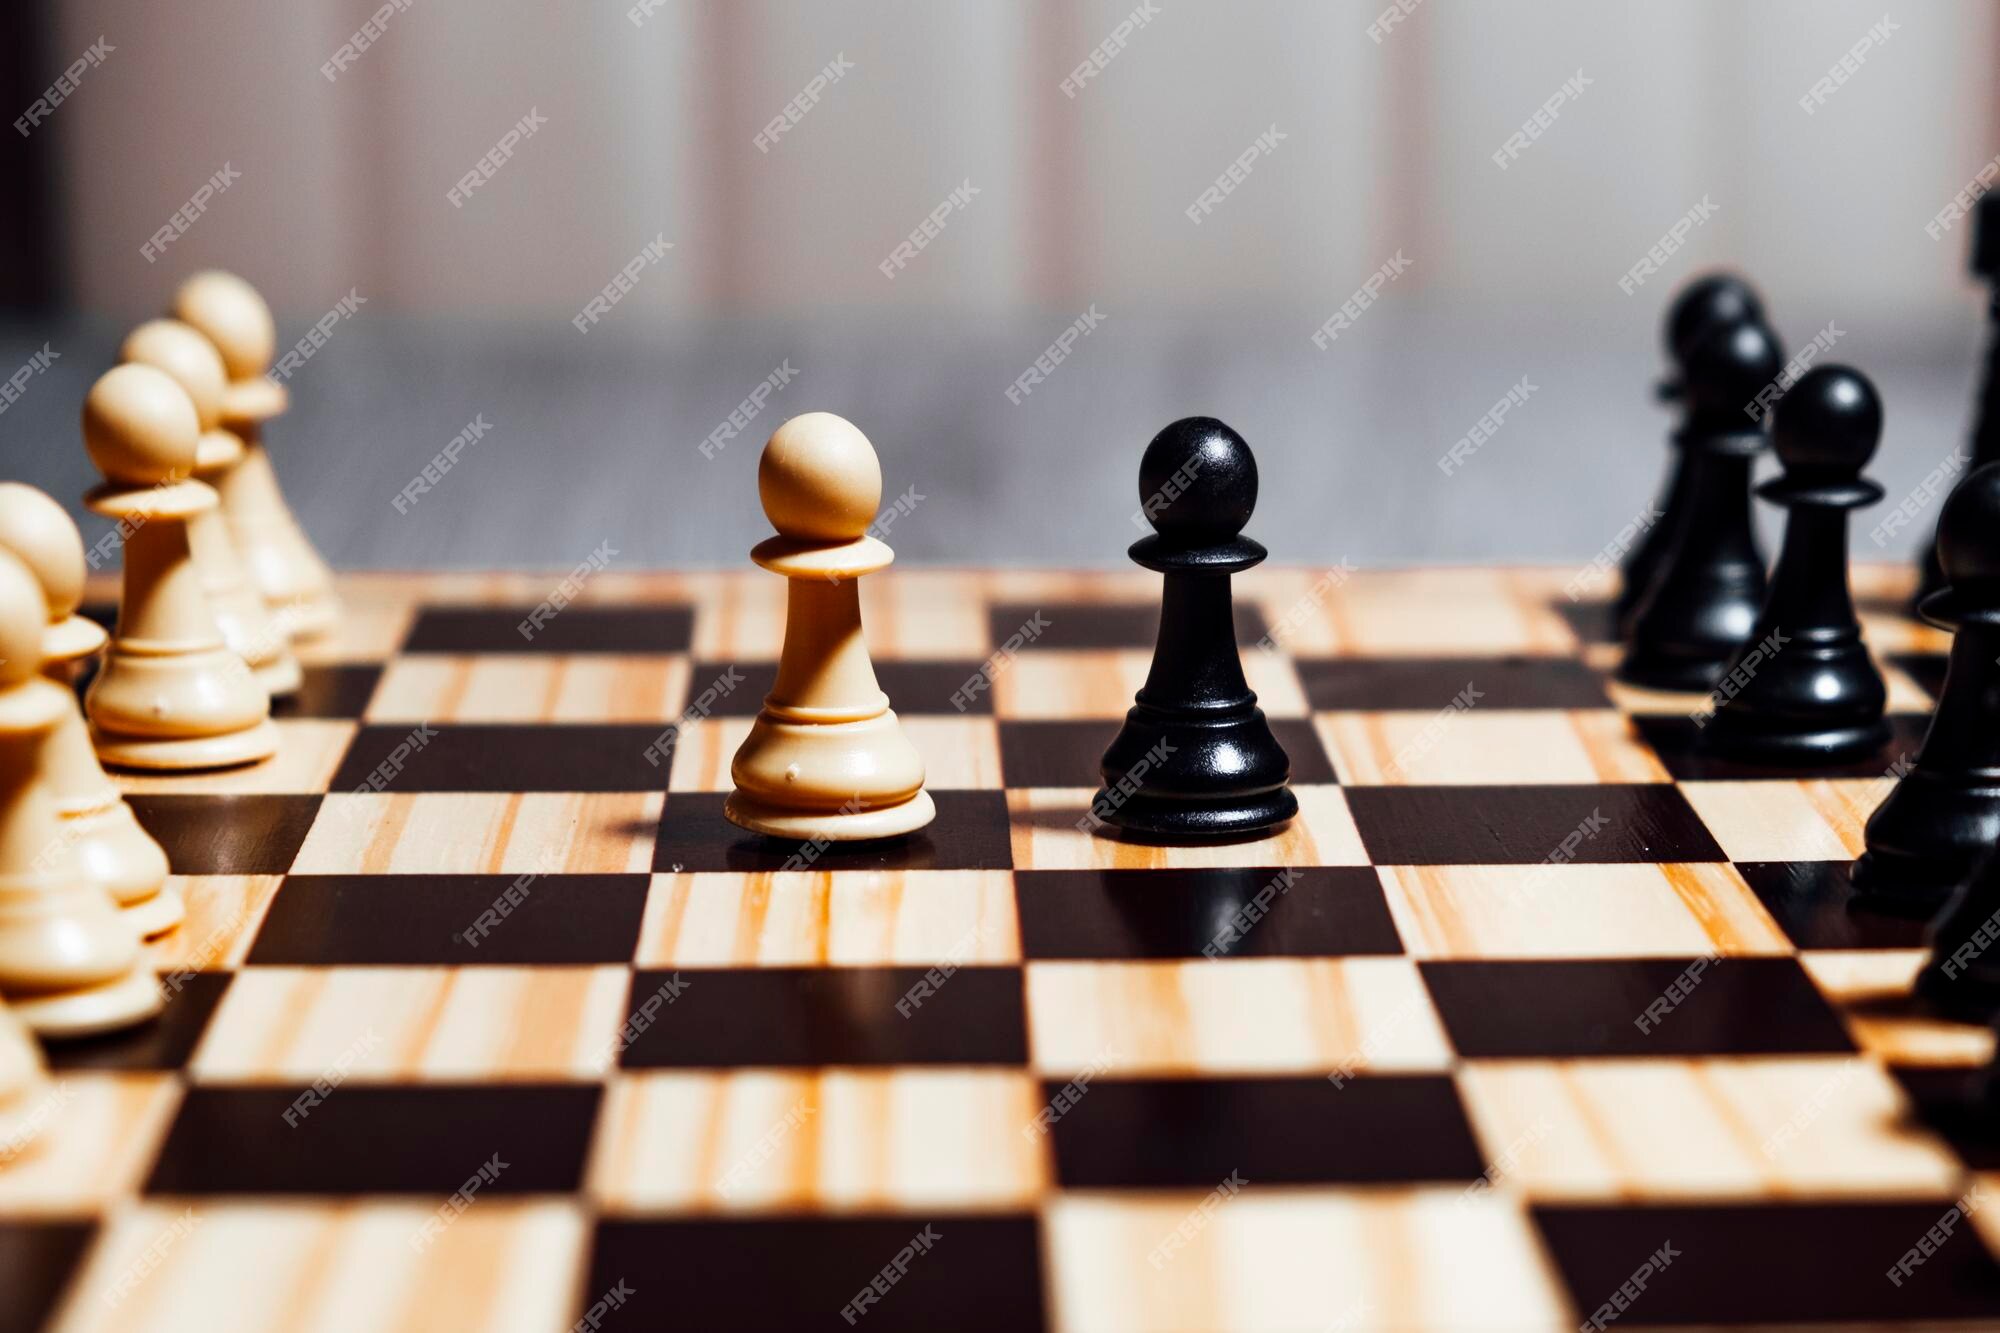 Dois peões um jogo de xadrez inicial branco e um preto